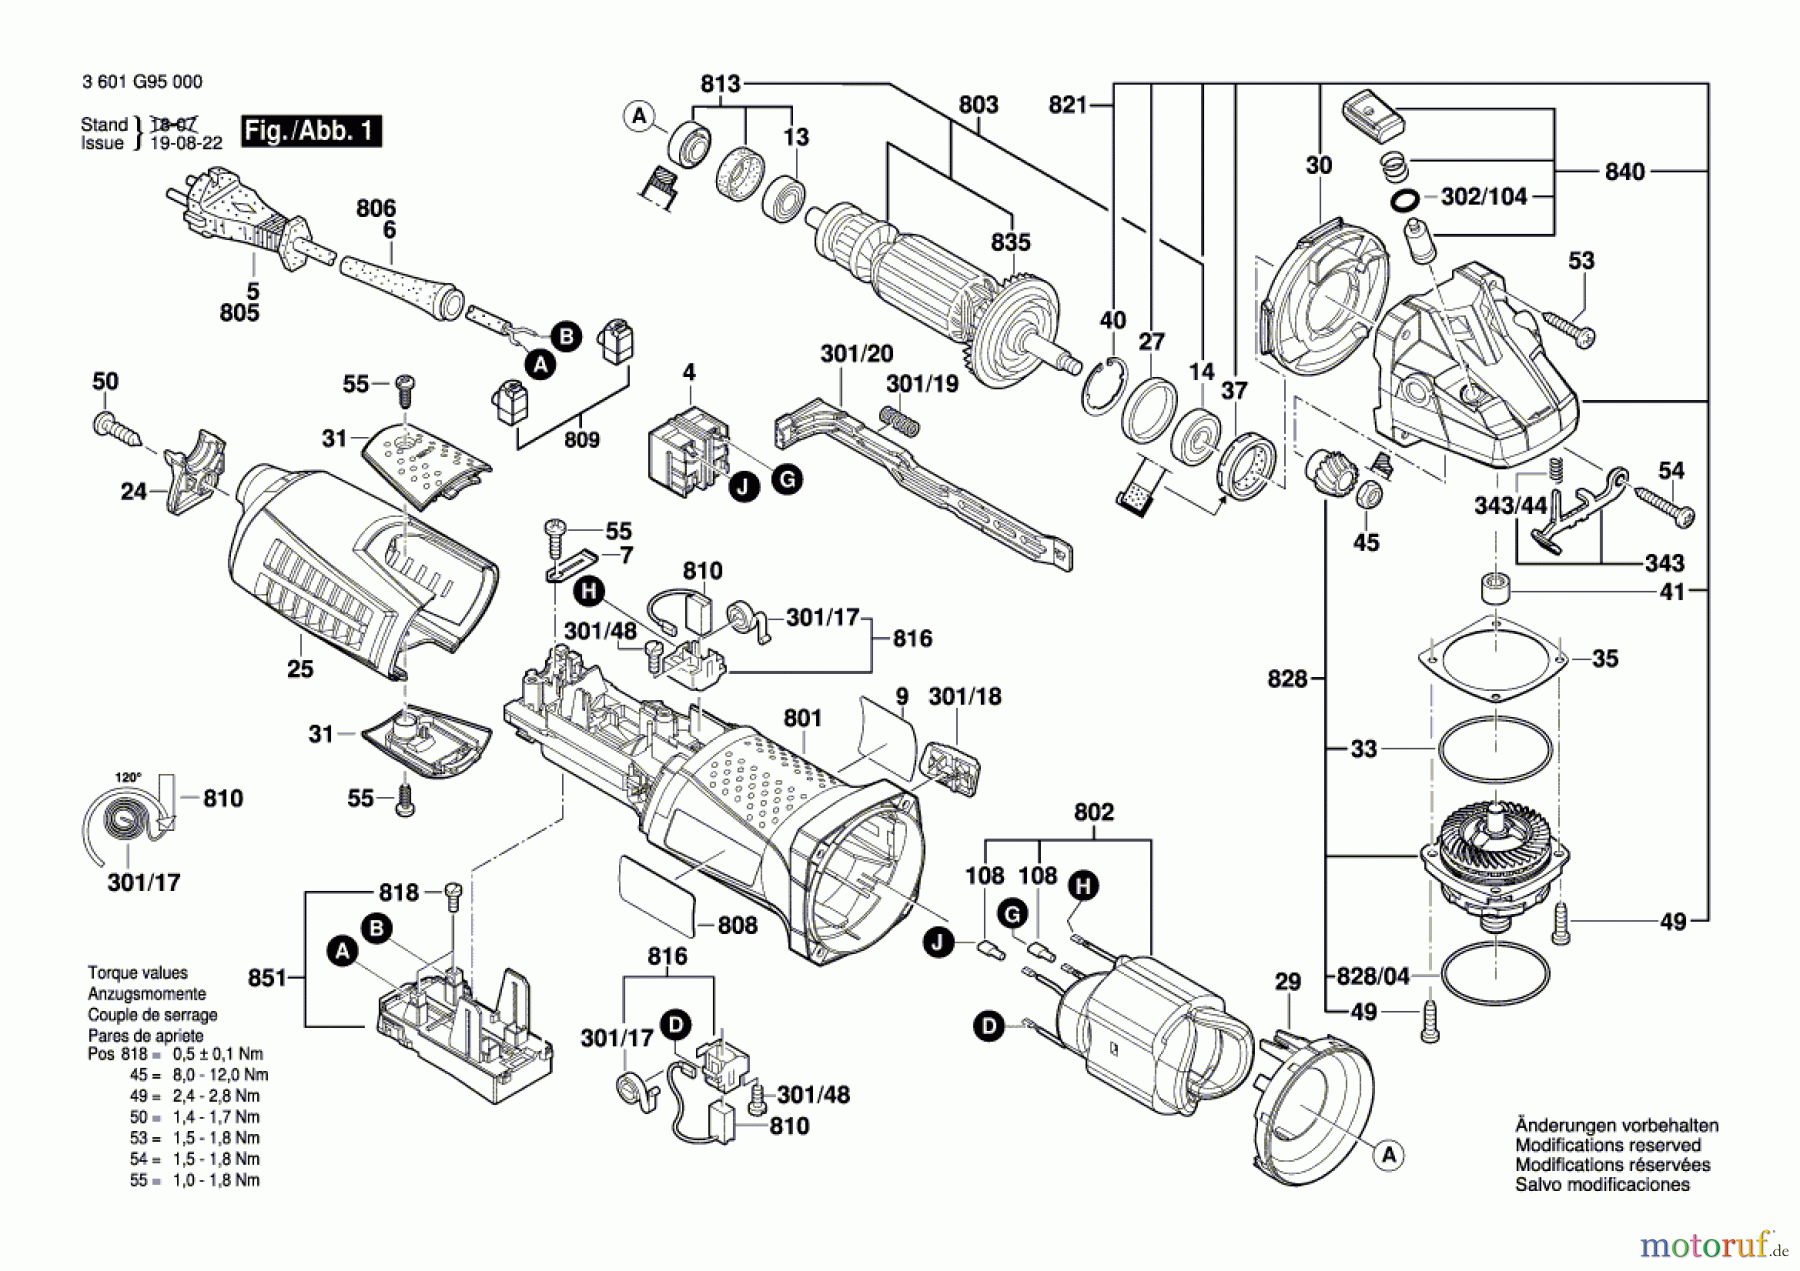  Bosch Werkzeug Winkelschleifer GWS 15-150 CI Seite 1